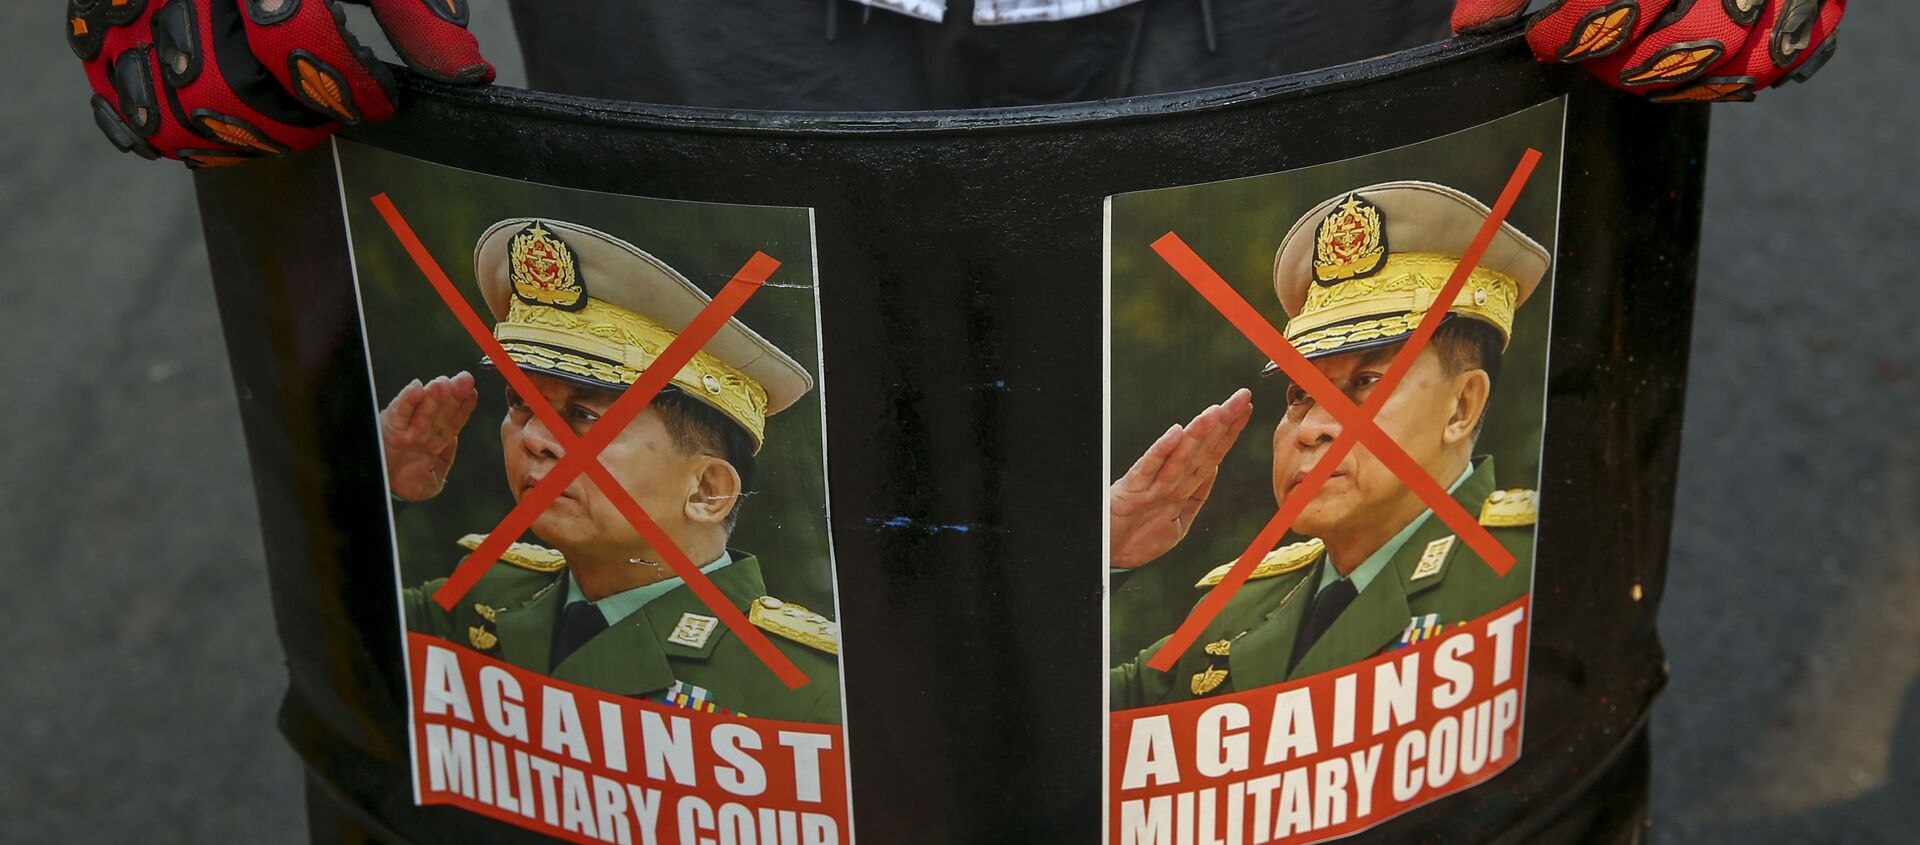 Một người biểu tình chống đảo chính trưng bày những hình ảnh bị bôi nhọ của Tổng tư lệnh, Thượng tướng Min Aung Hlaing ở Mandalay, Myanmar, Thứ Tư, ngày 3 tháng 3 năm 2021. - Sputnik Việt Nam, 1920, 16.03.2021